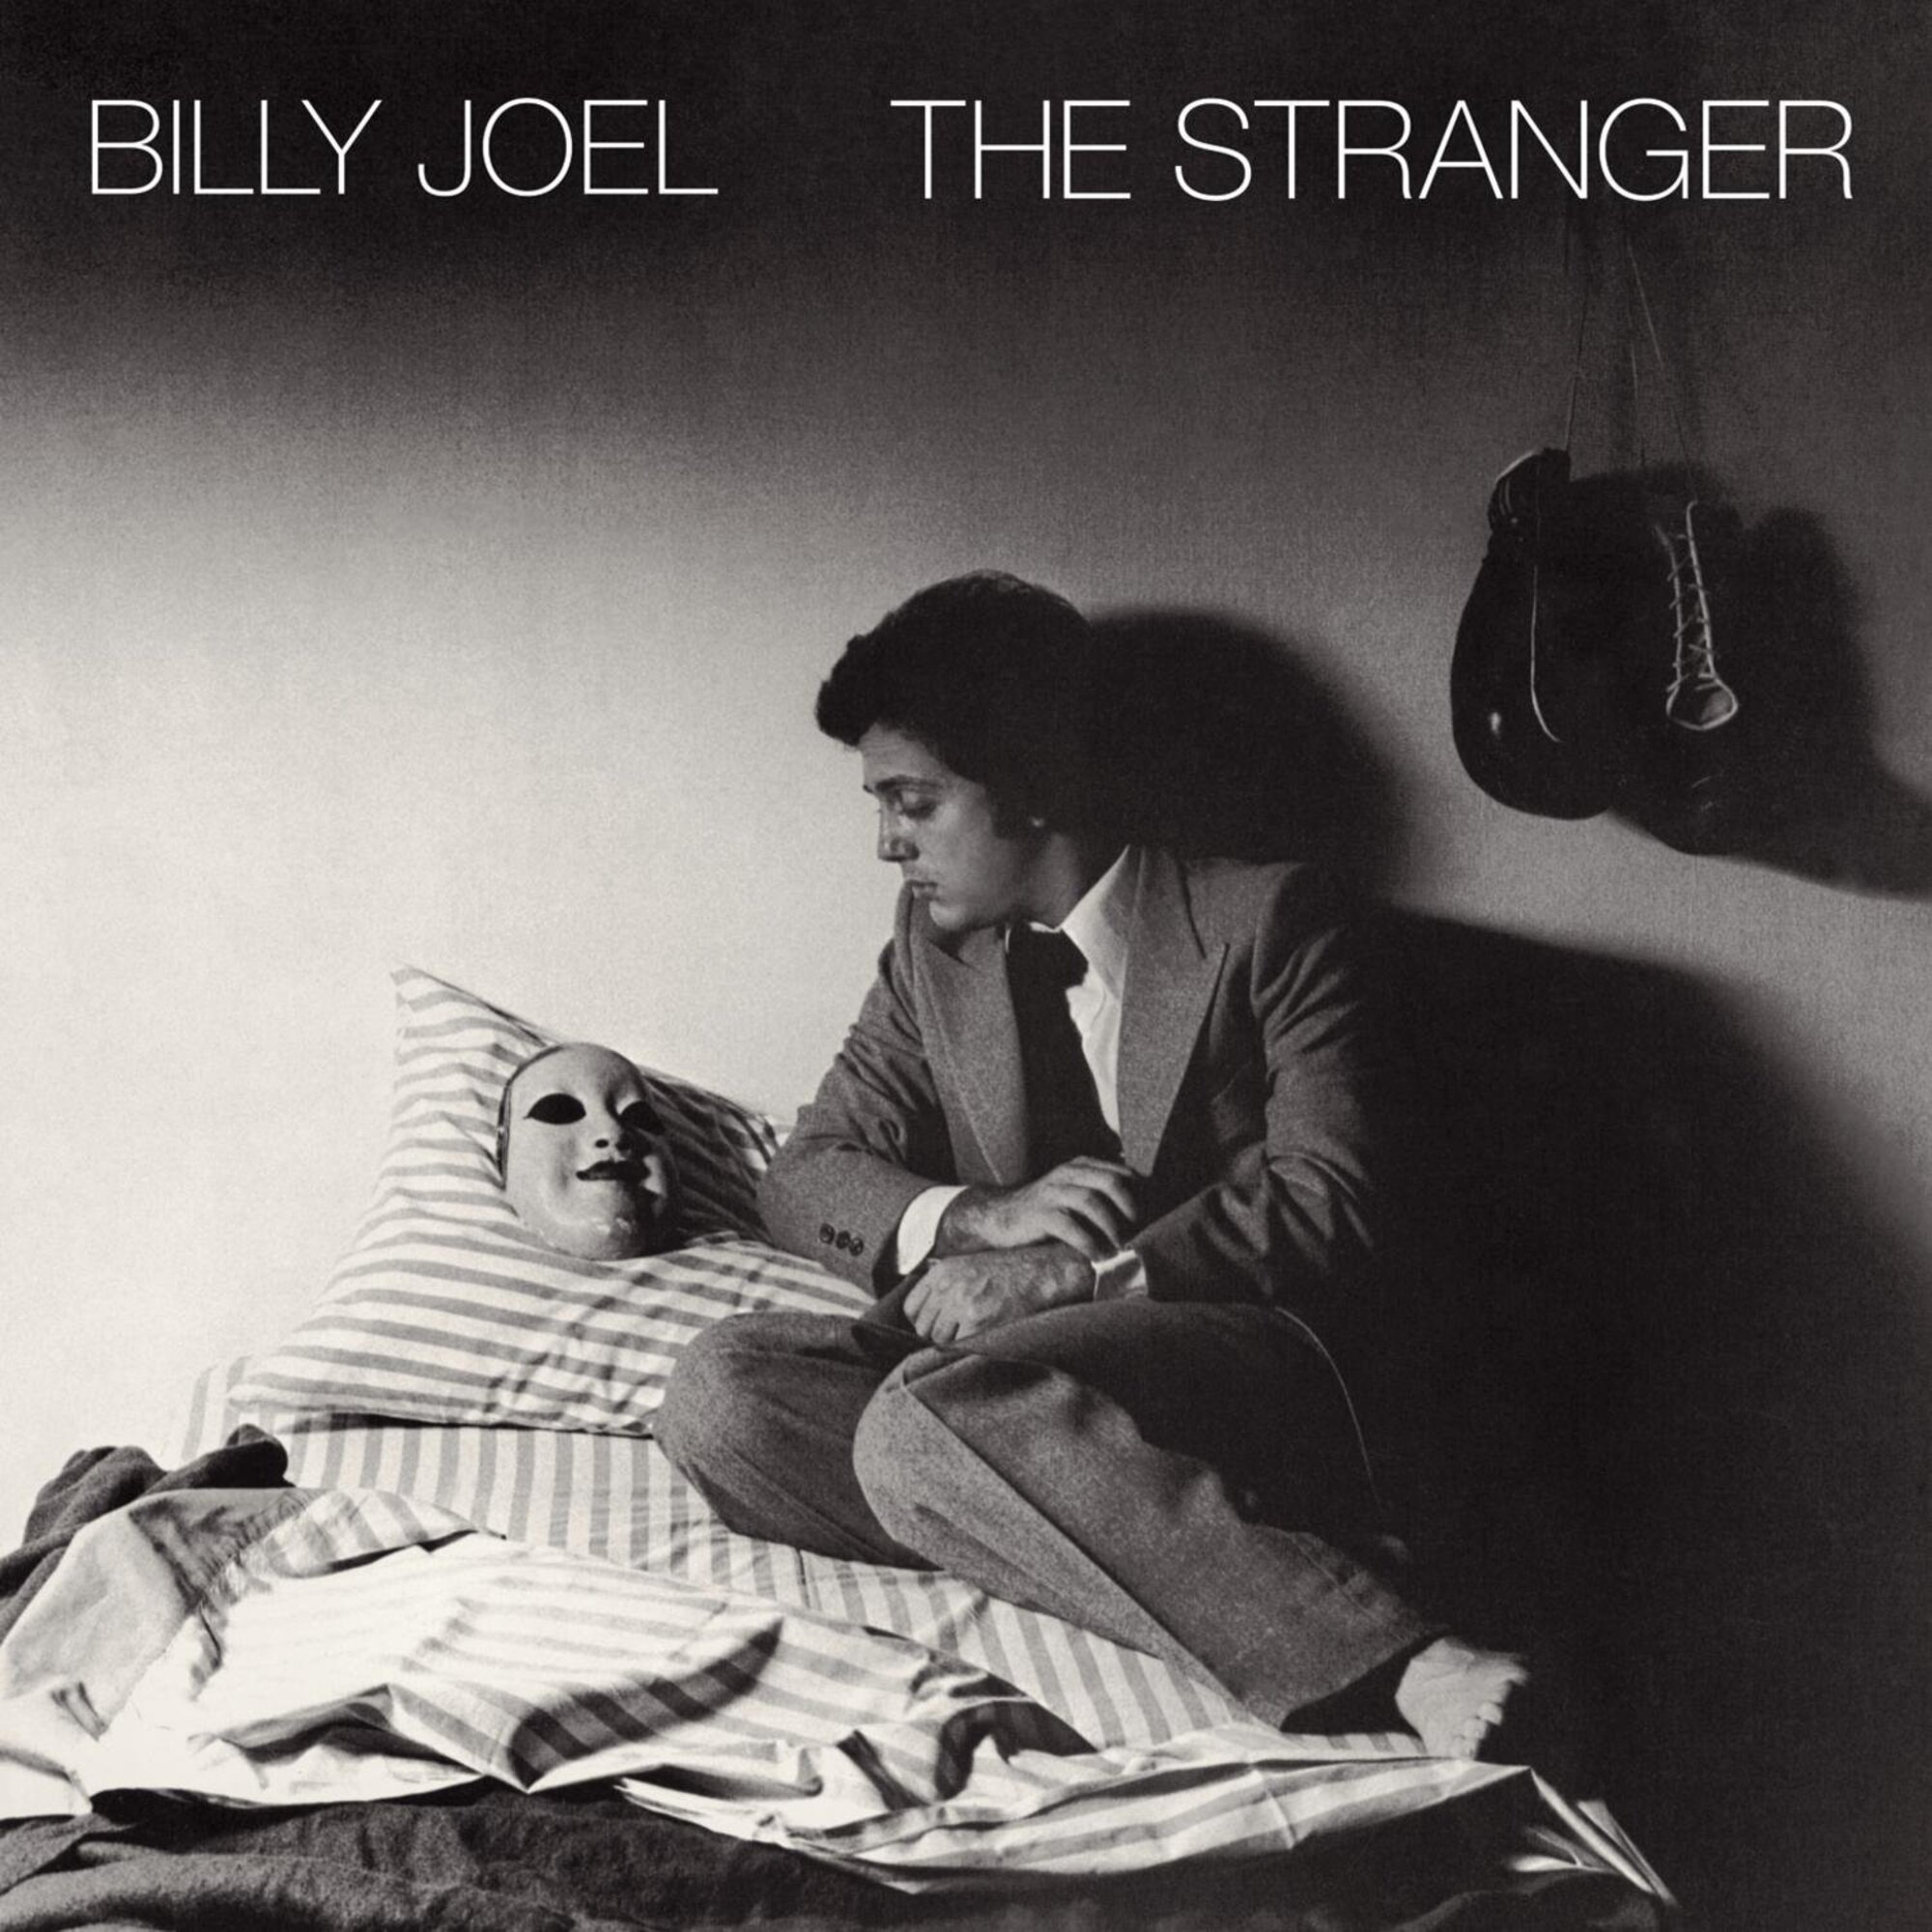 <p>Het vijfde album van Billy Joel werd geproduceerd door Phil Ramone en was de kwalitatieve sprong die de zanger nodig had. Sterker nog, ze bleven een groot deel van de jaren tachtig samenwerken. Legendarische nummers als 'Just the way you are', 'She's always a woman' en 'Movin' out' bevinden zich op dit album.</p>